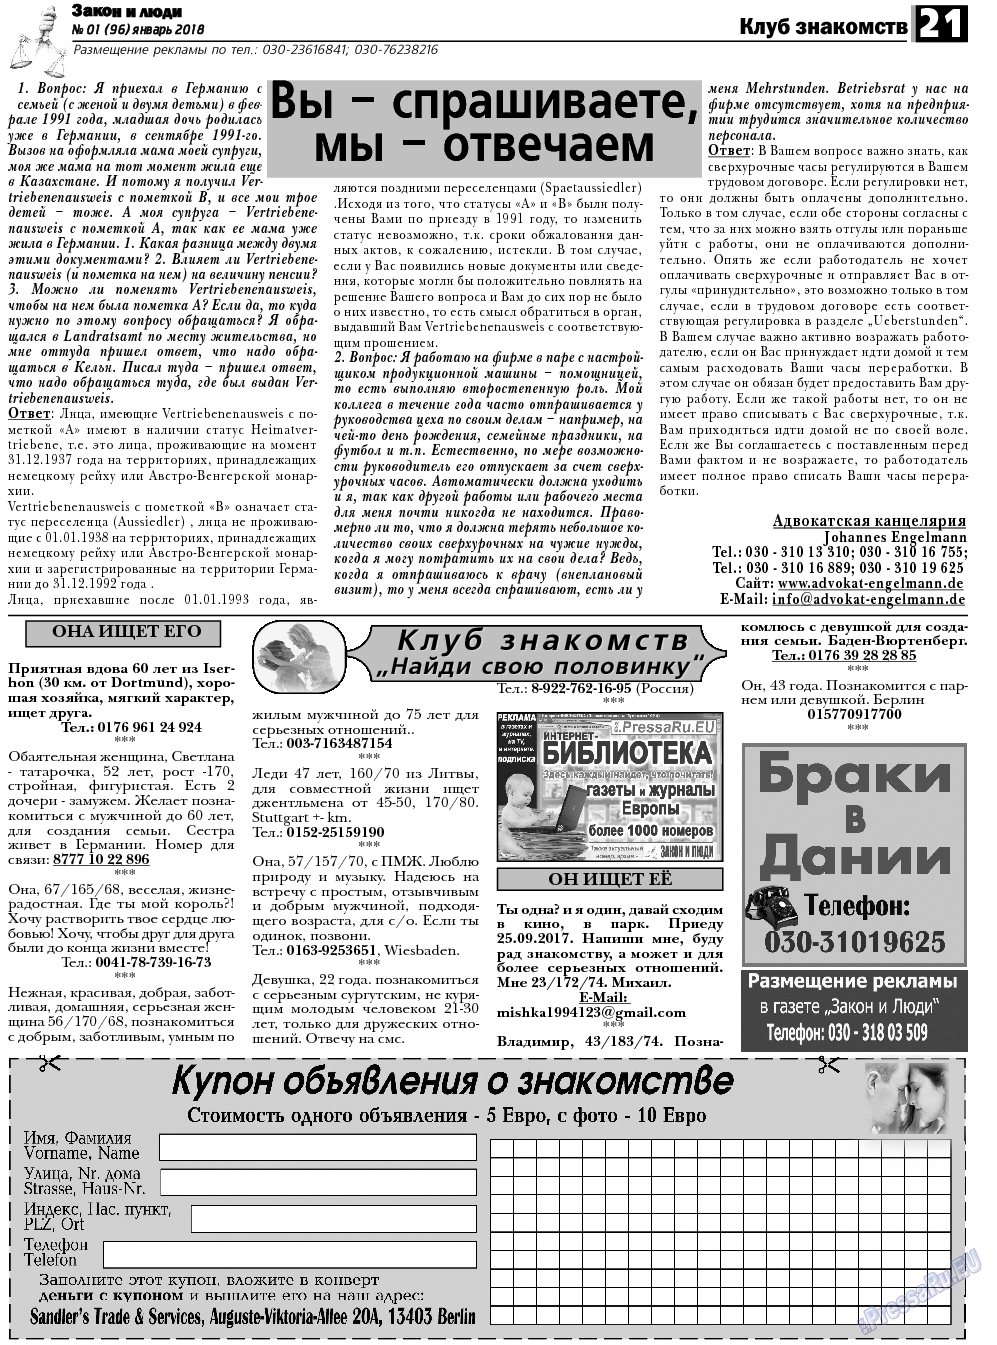 Закон и люди, газета. 2018 №1 стр.21